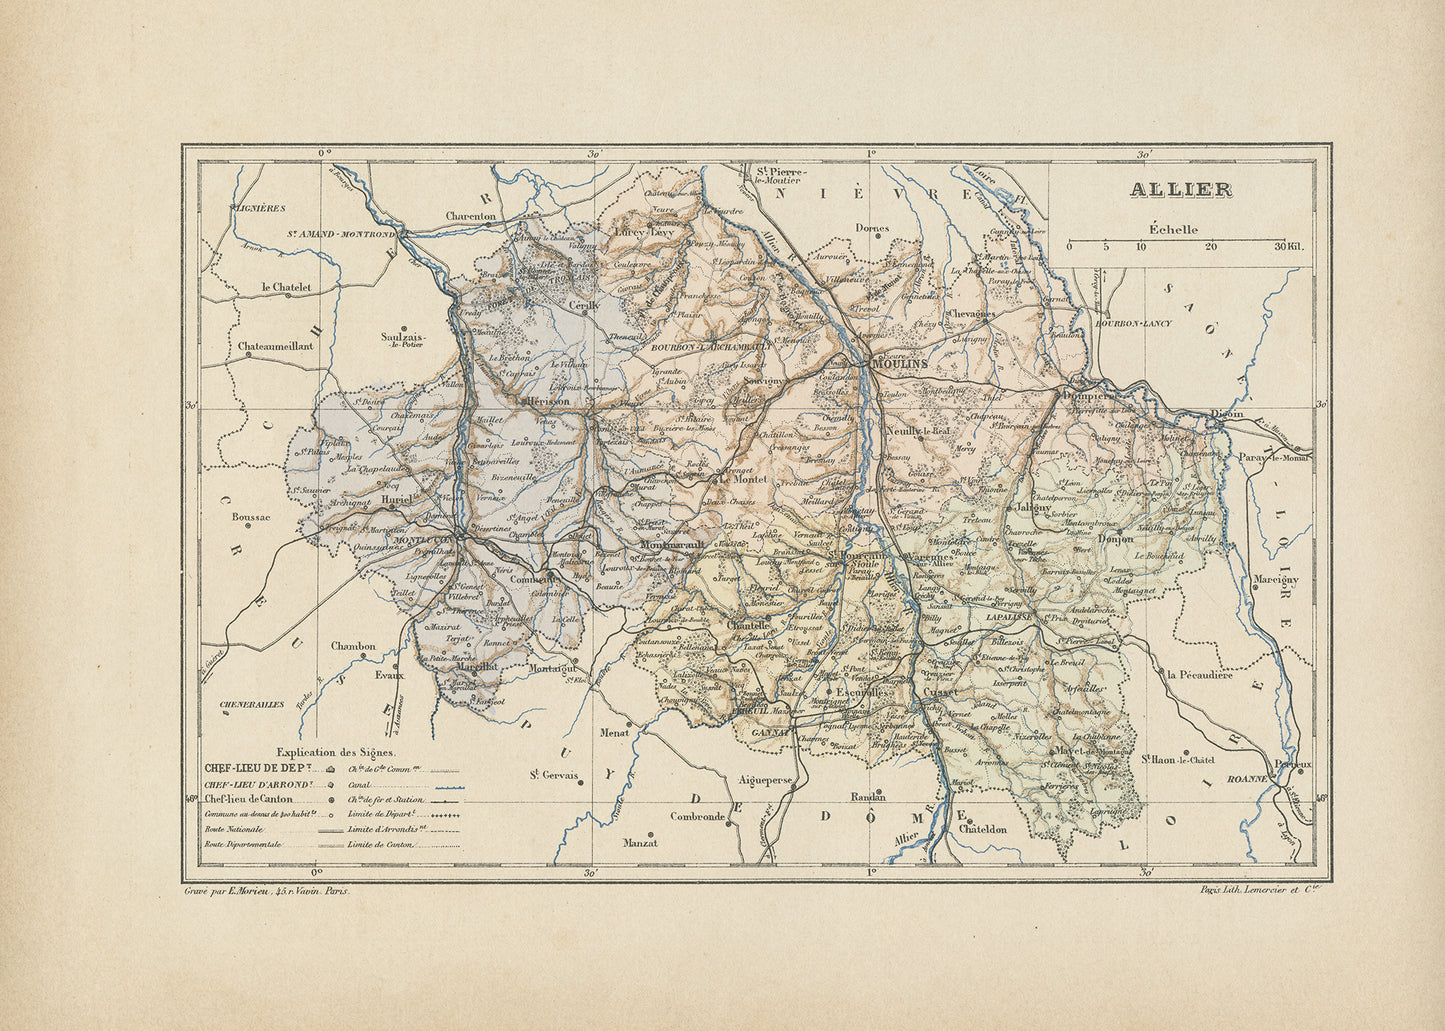 1892 Carte ancienne de l'Allier